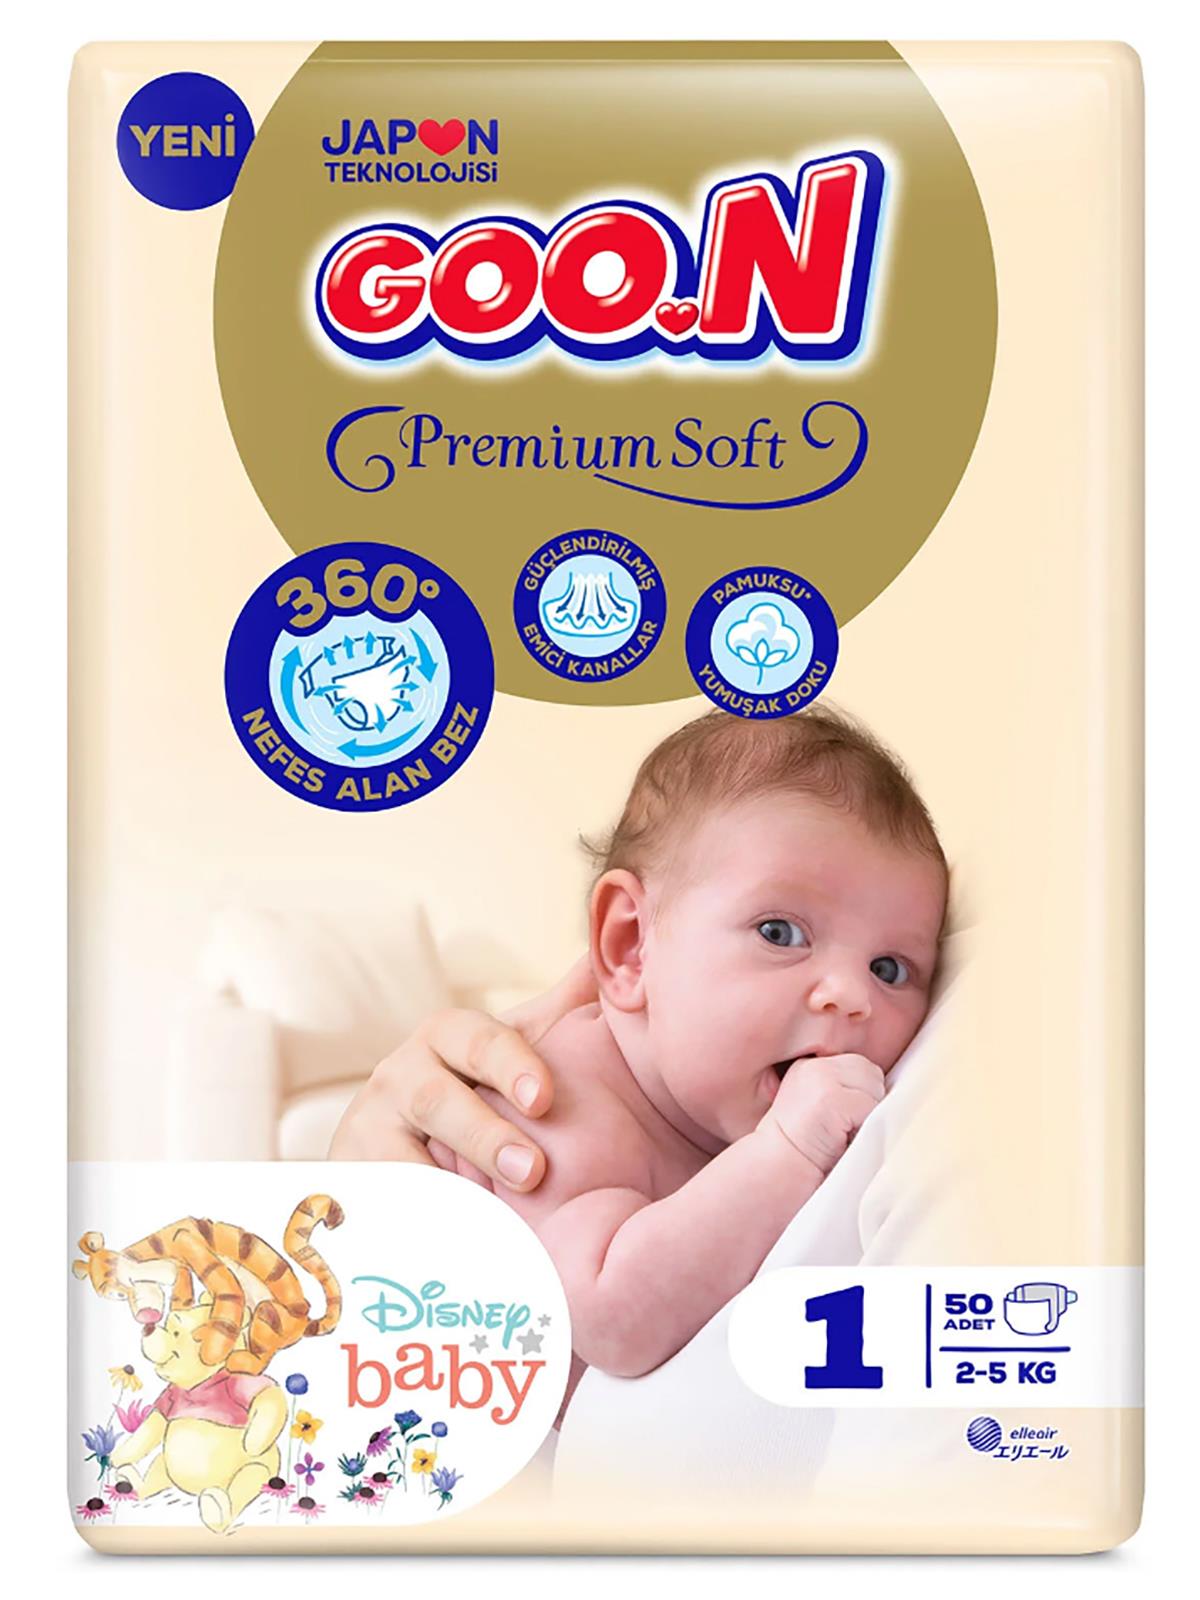 Goon Bebek Bezi Premium Soft 1 Beden Jumbo Yenidoğan Paket 50 Adet 2-5 kg